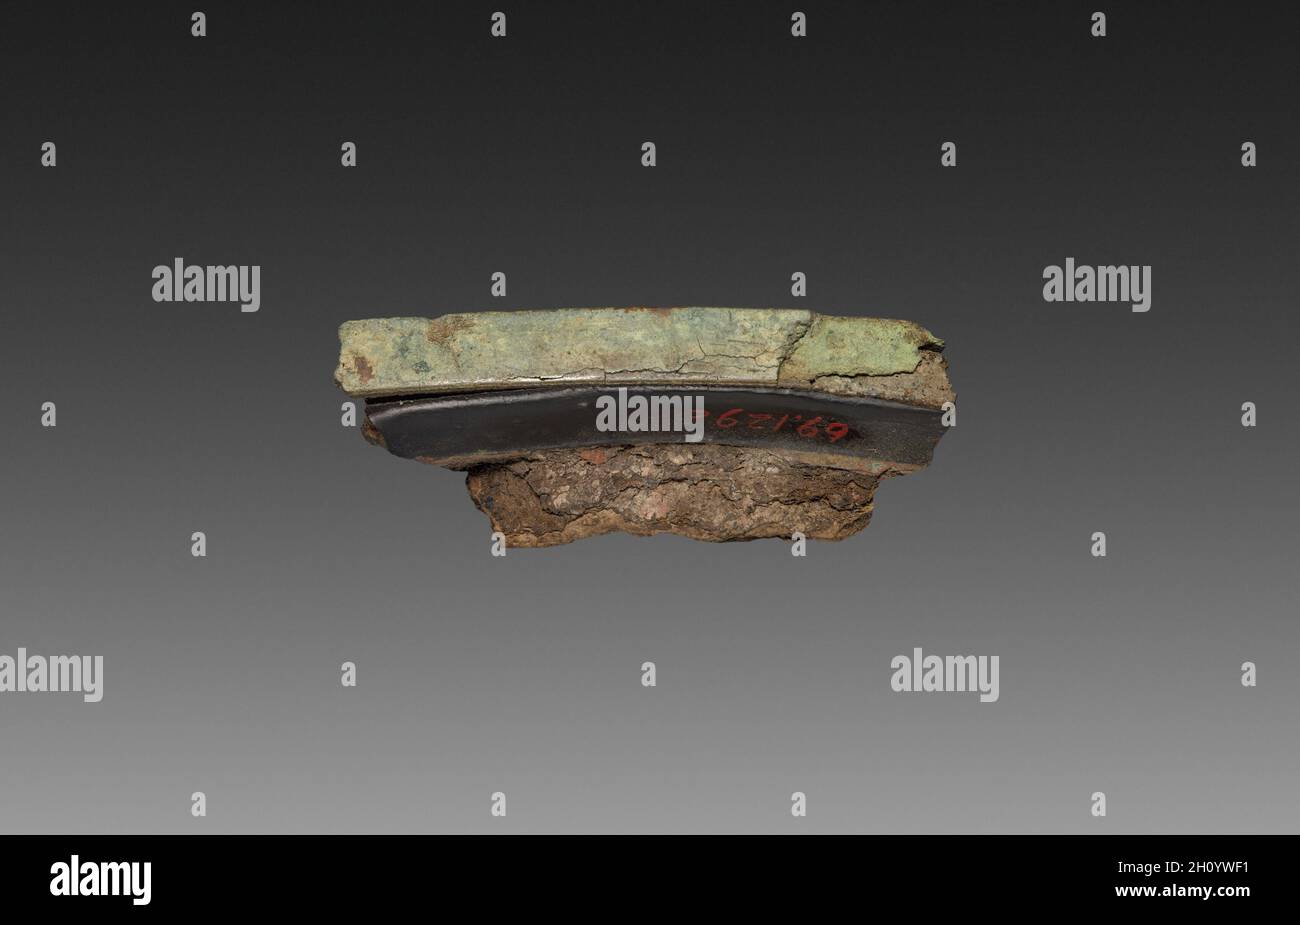 Frammento di un vassoio di lacca, 9-24. Cina, scavato a Lolang, Xin dynasty (9-23). La lacca; complessivo: 1,6 x 5,1 cm (5/8 x 2 in.). Foto Stock